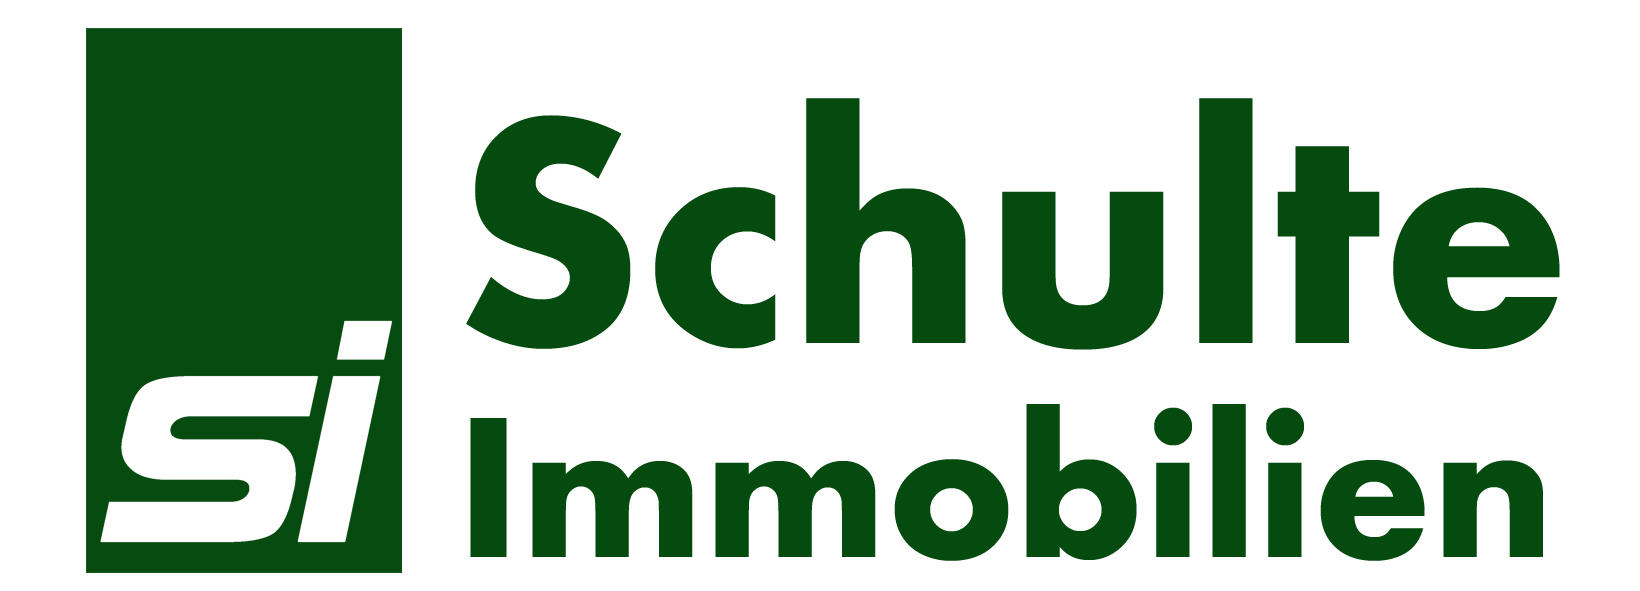 Bild 7 Schulte Immobilien GmbH in Düsseldorf